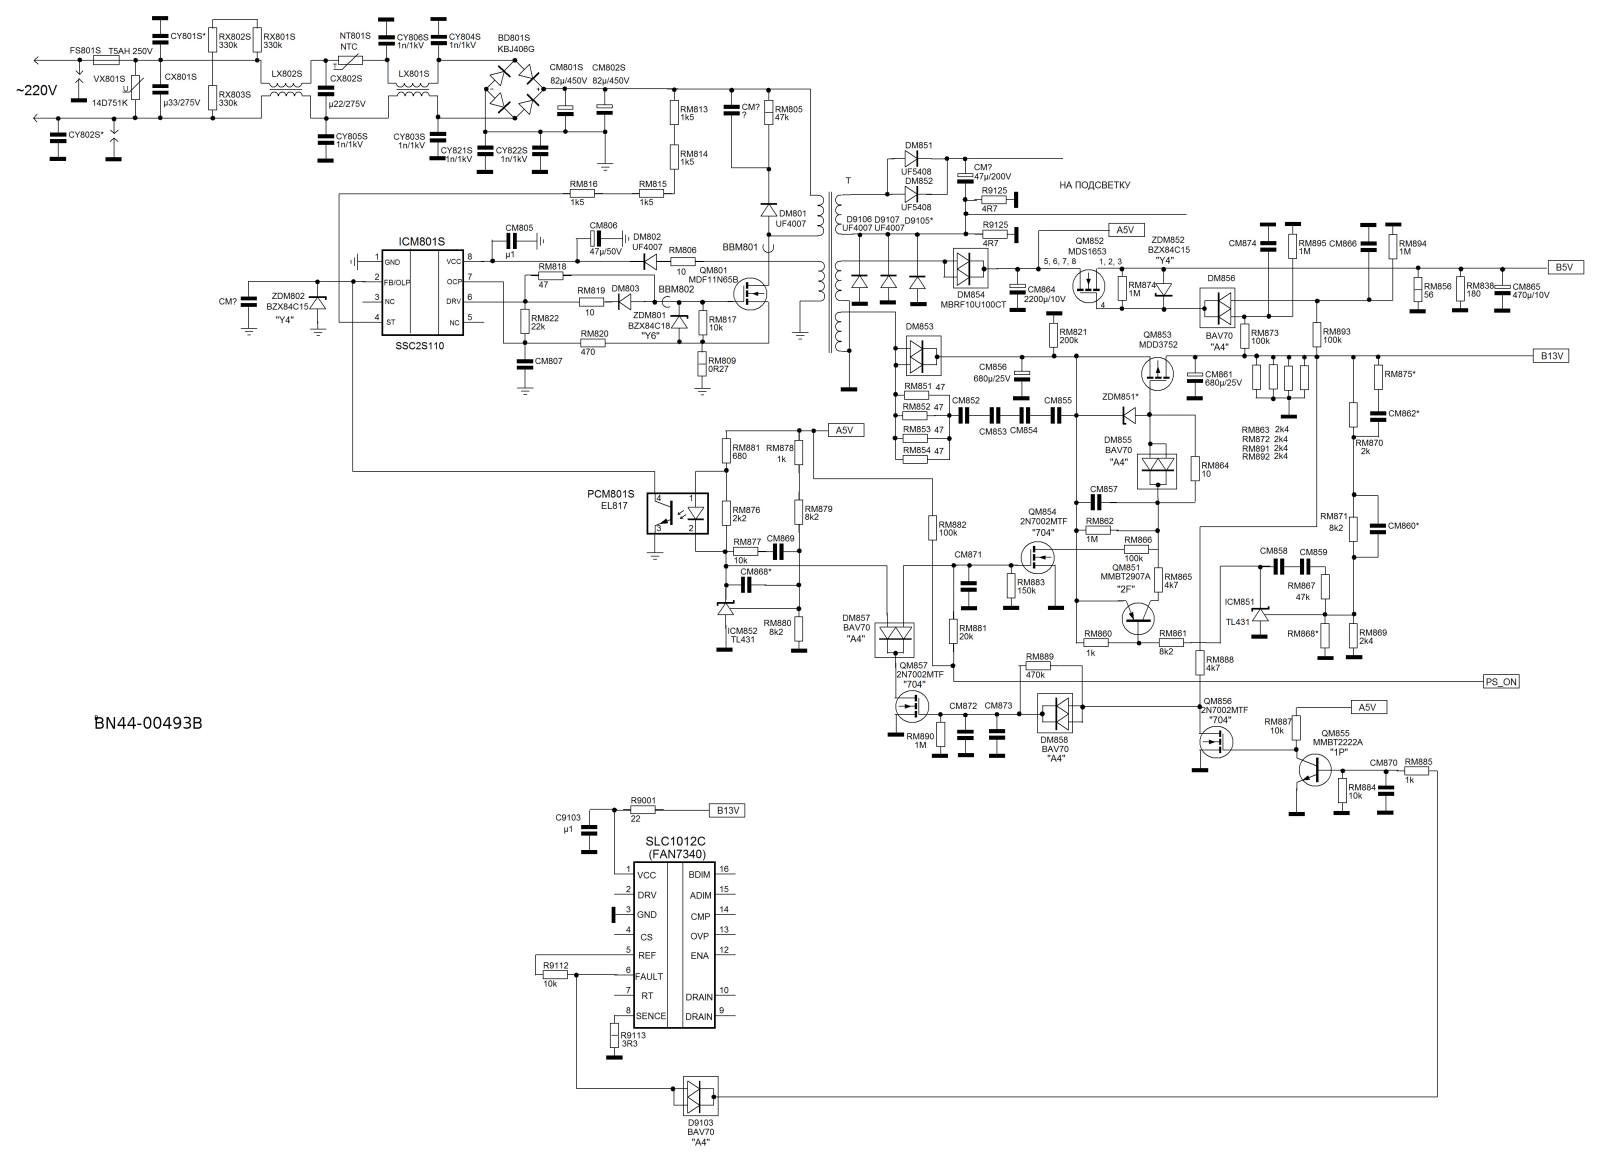 Samsung BN44-00493B Schematic